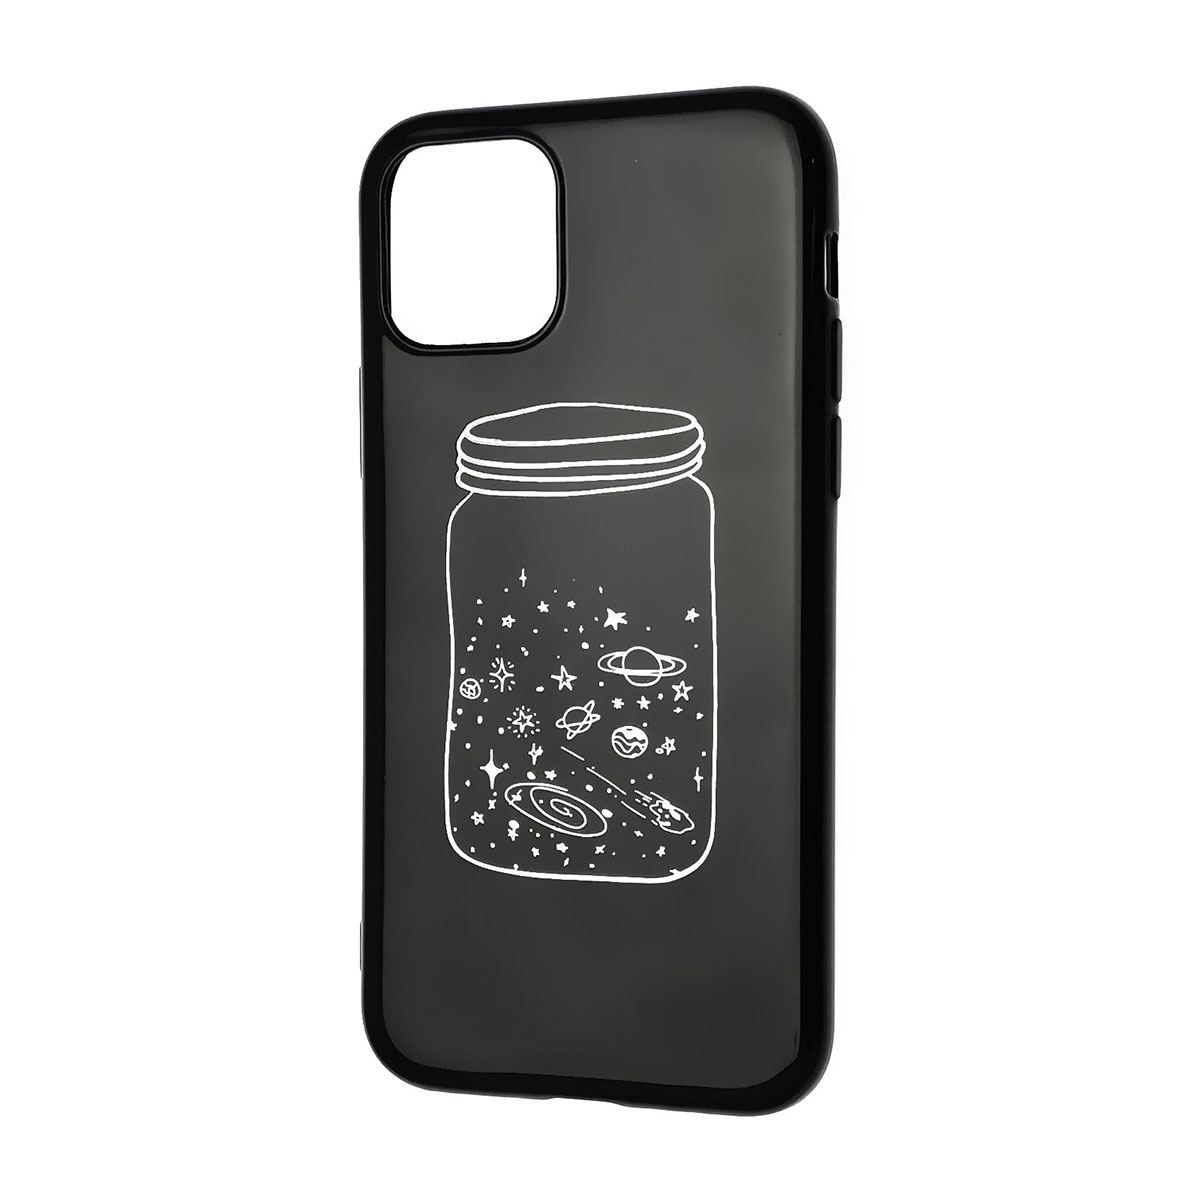 Чехол накладка для APPLE iPhone 11 Pro, силикон, матовый, рисунок Банка галактика, цвет черный.